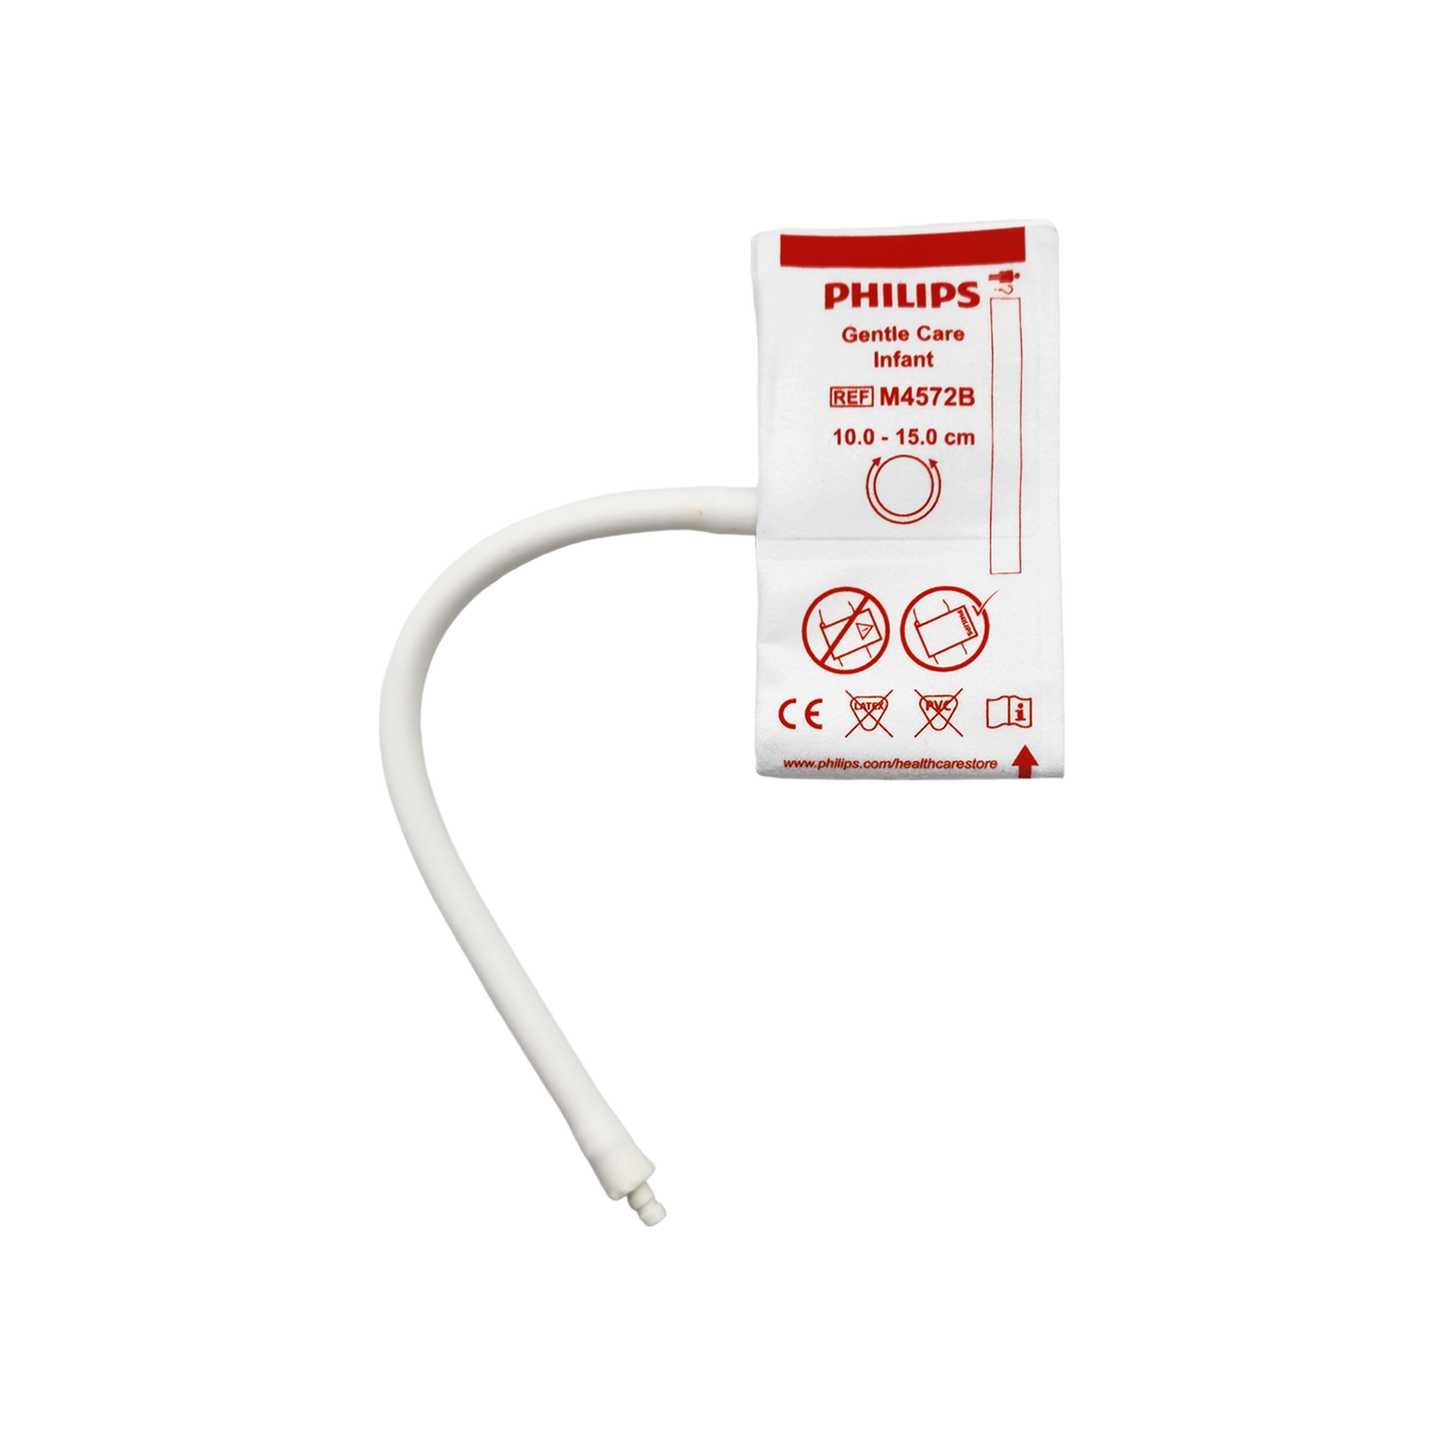 Philips NiBP Cuff Single Tube Non-Woven Fiber Infant (10.0-15.0cm) - M4572B/989803148001